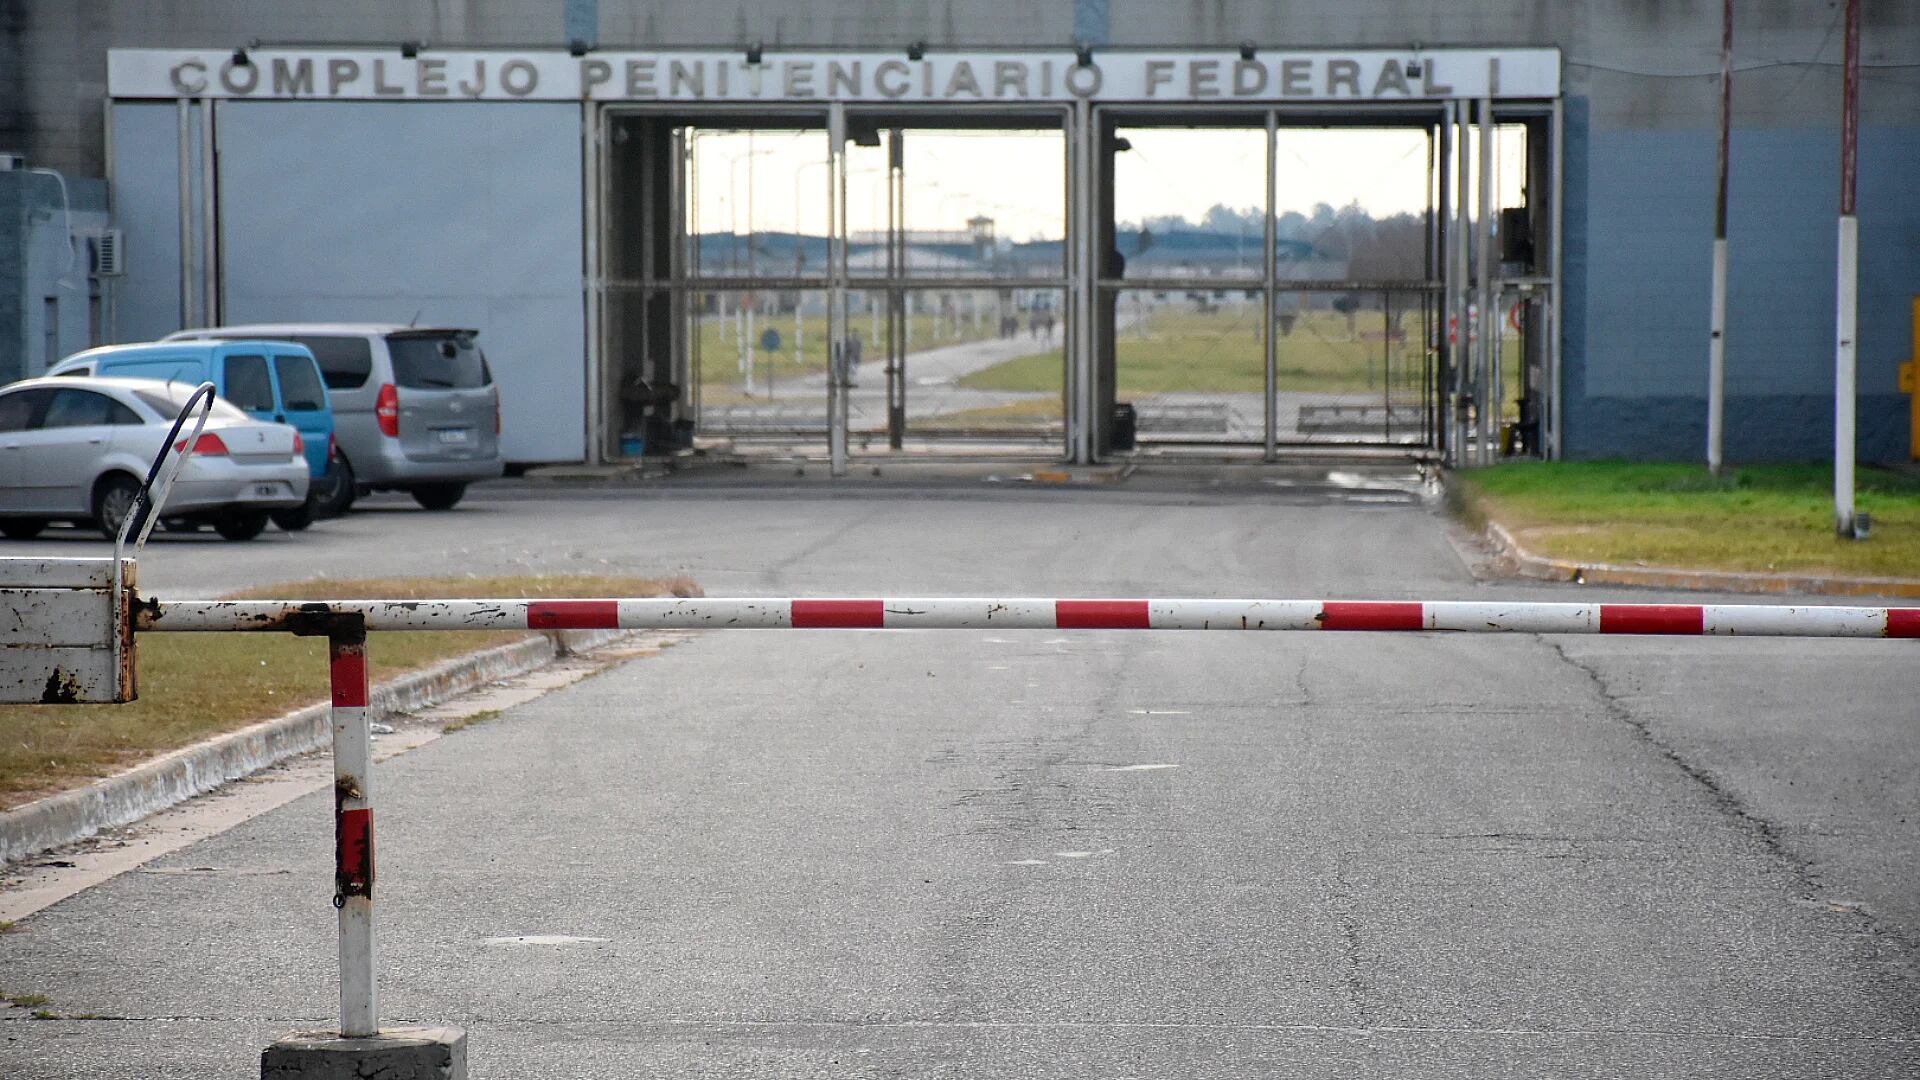 Escalada federal: tiros y amenazas a directivos del complejo penitenciario de Ezeiza